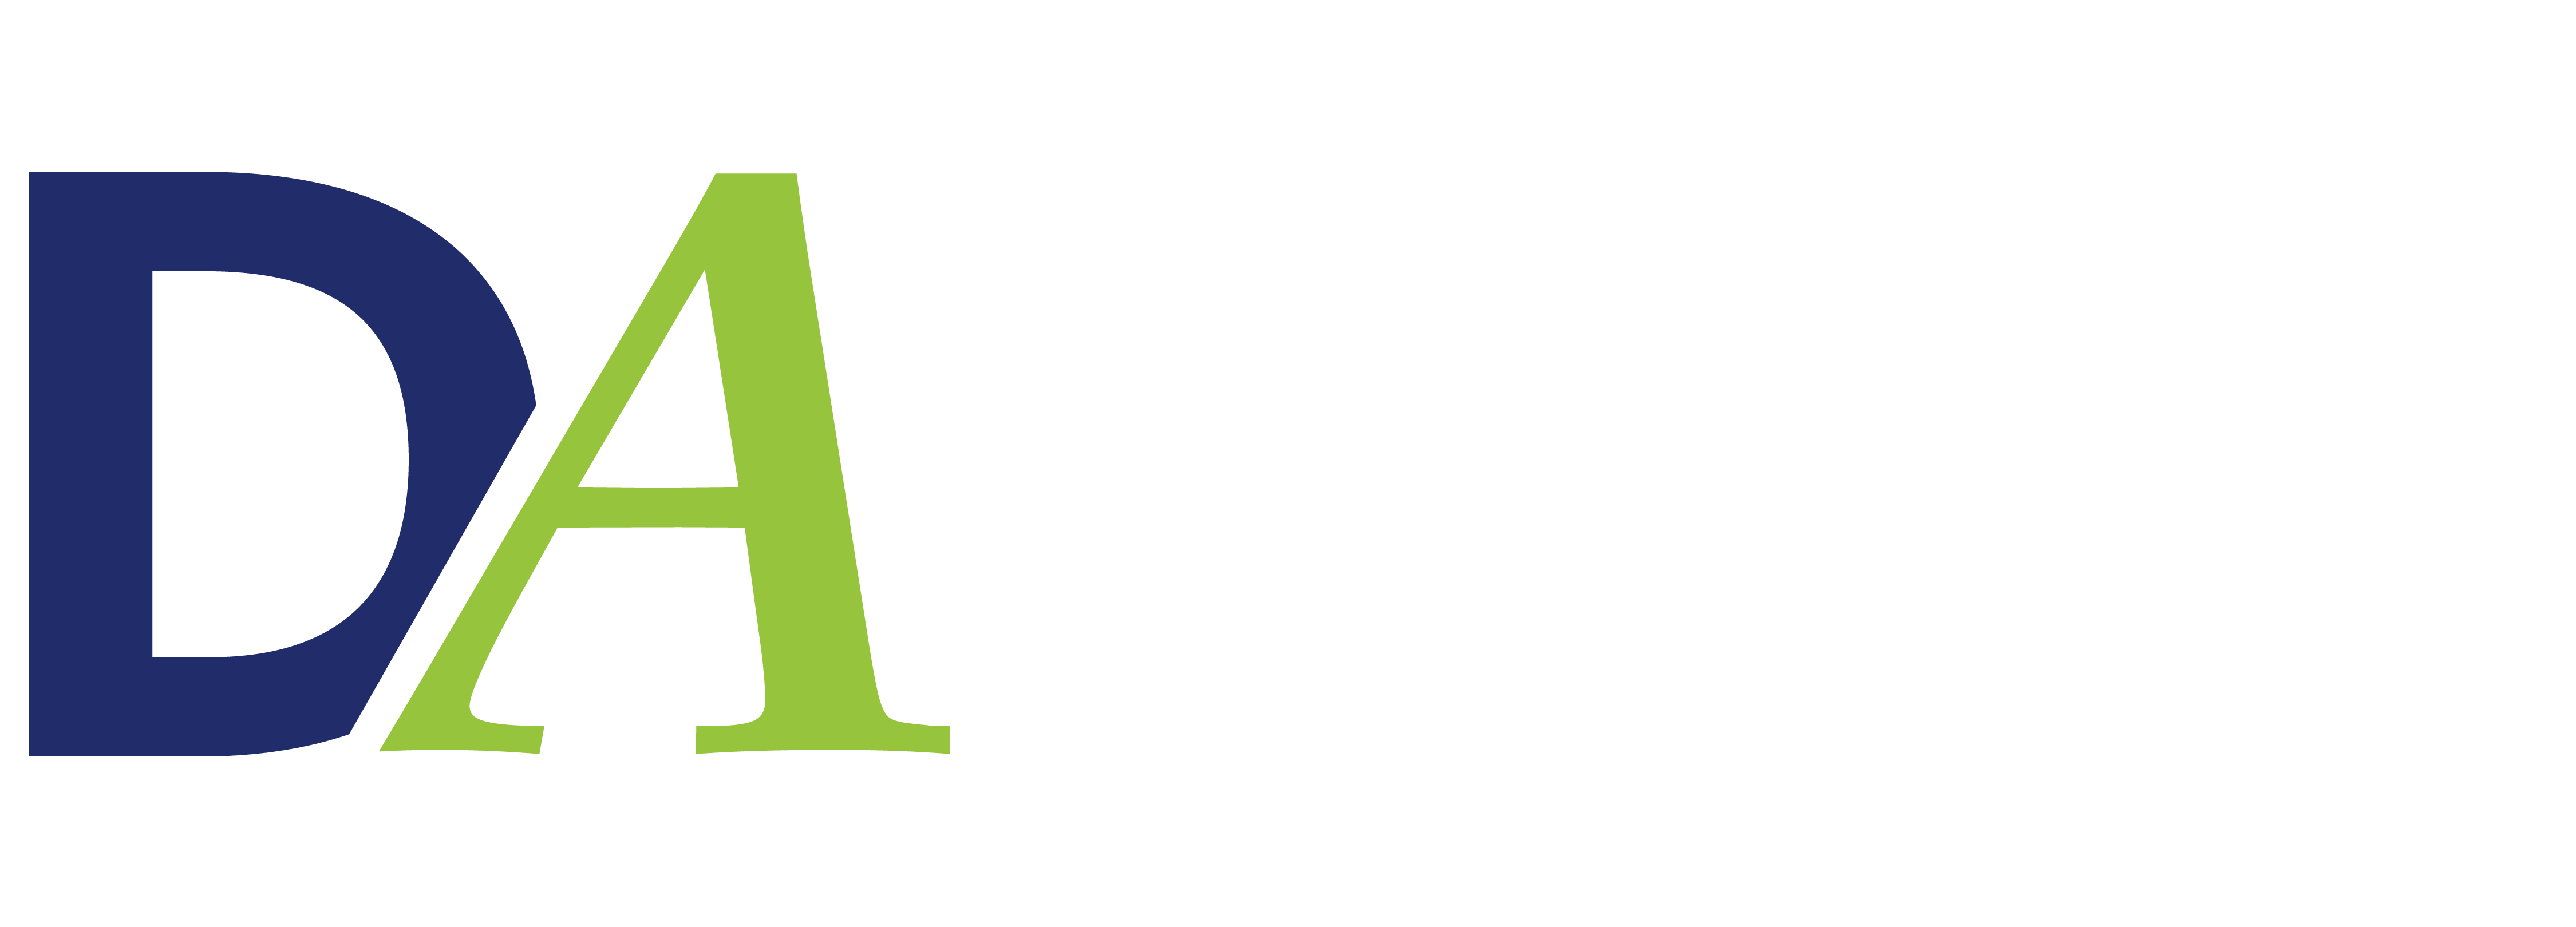 Dental Associates logomark Des Moines Dental Associates white